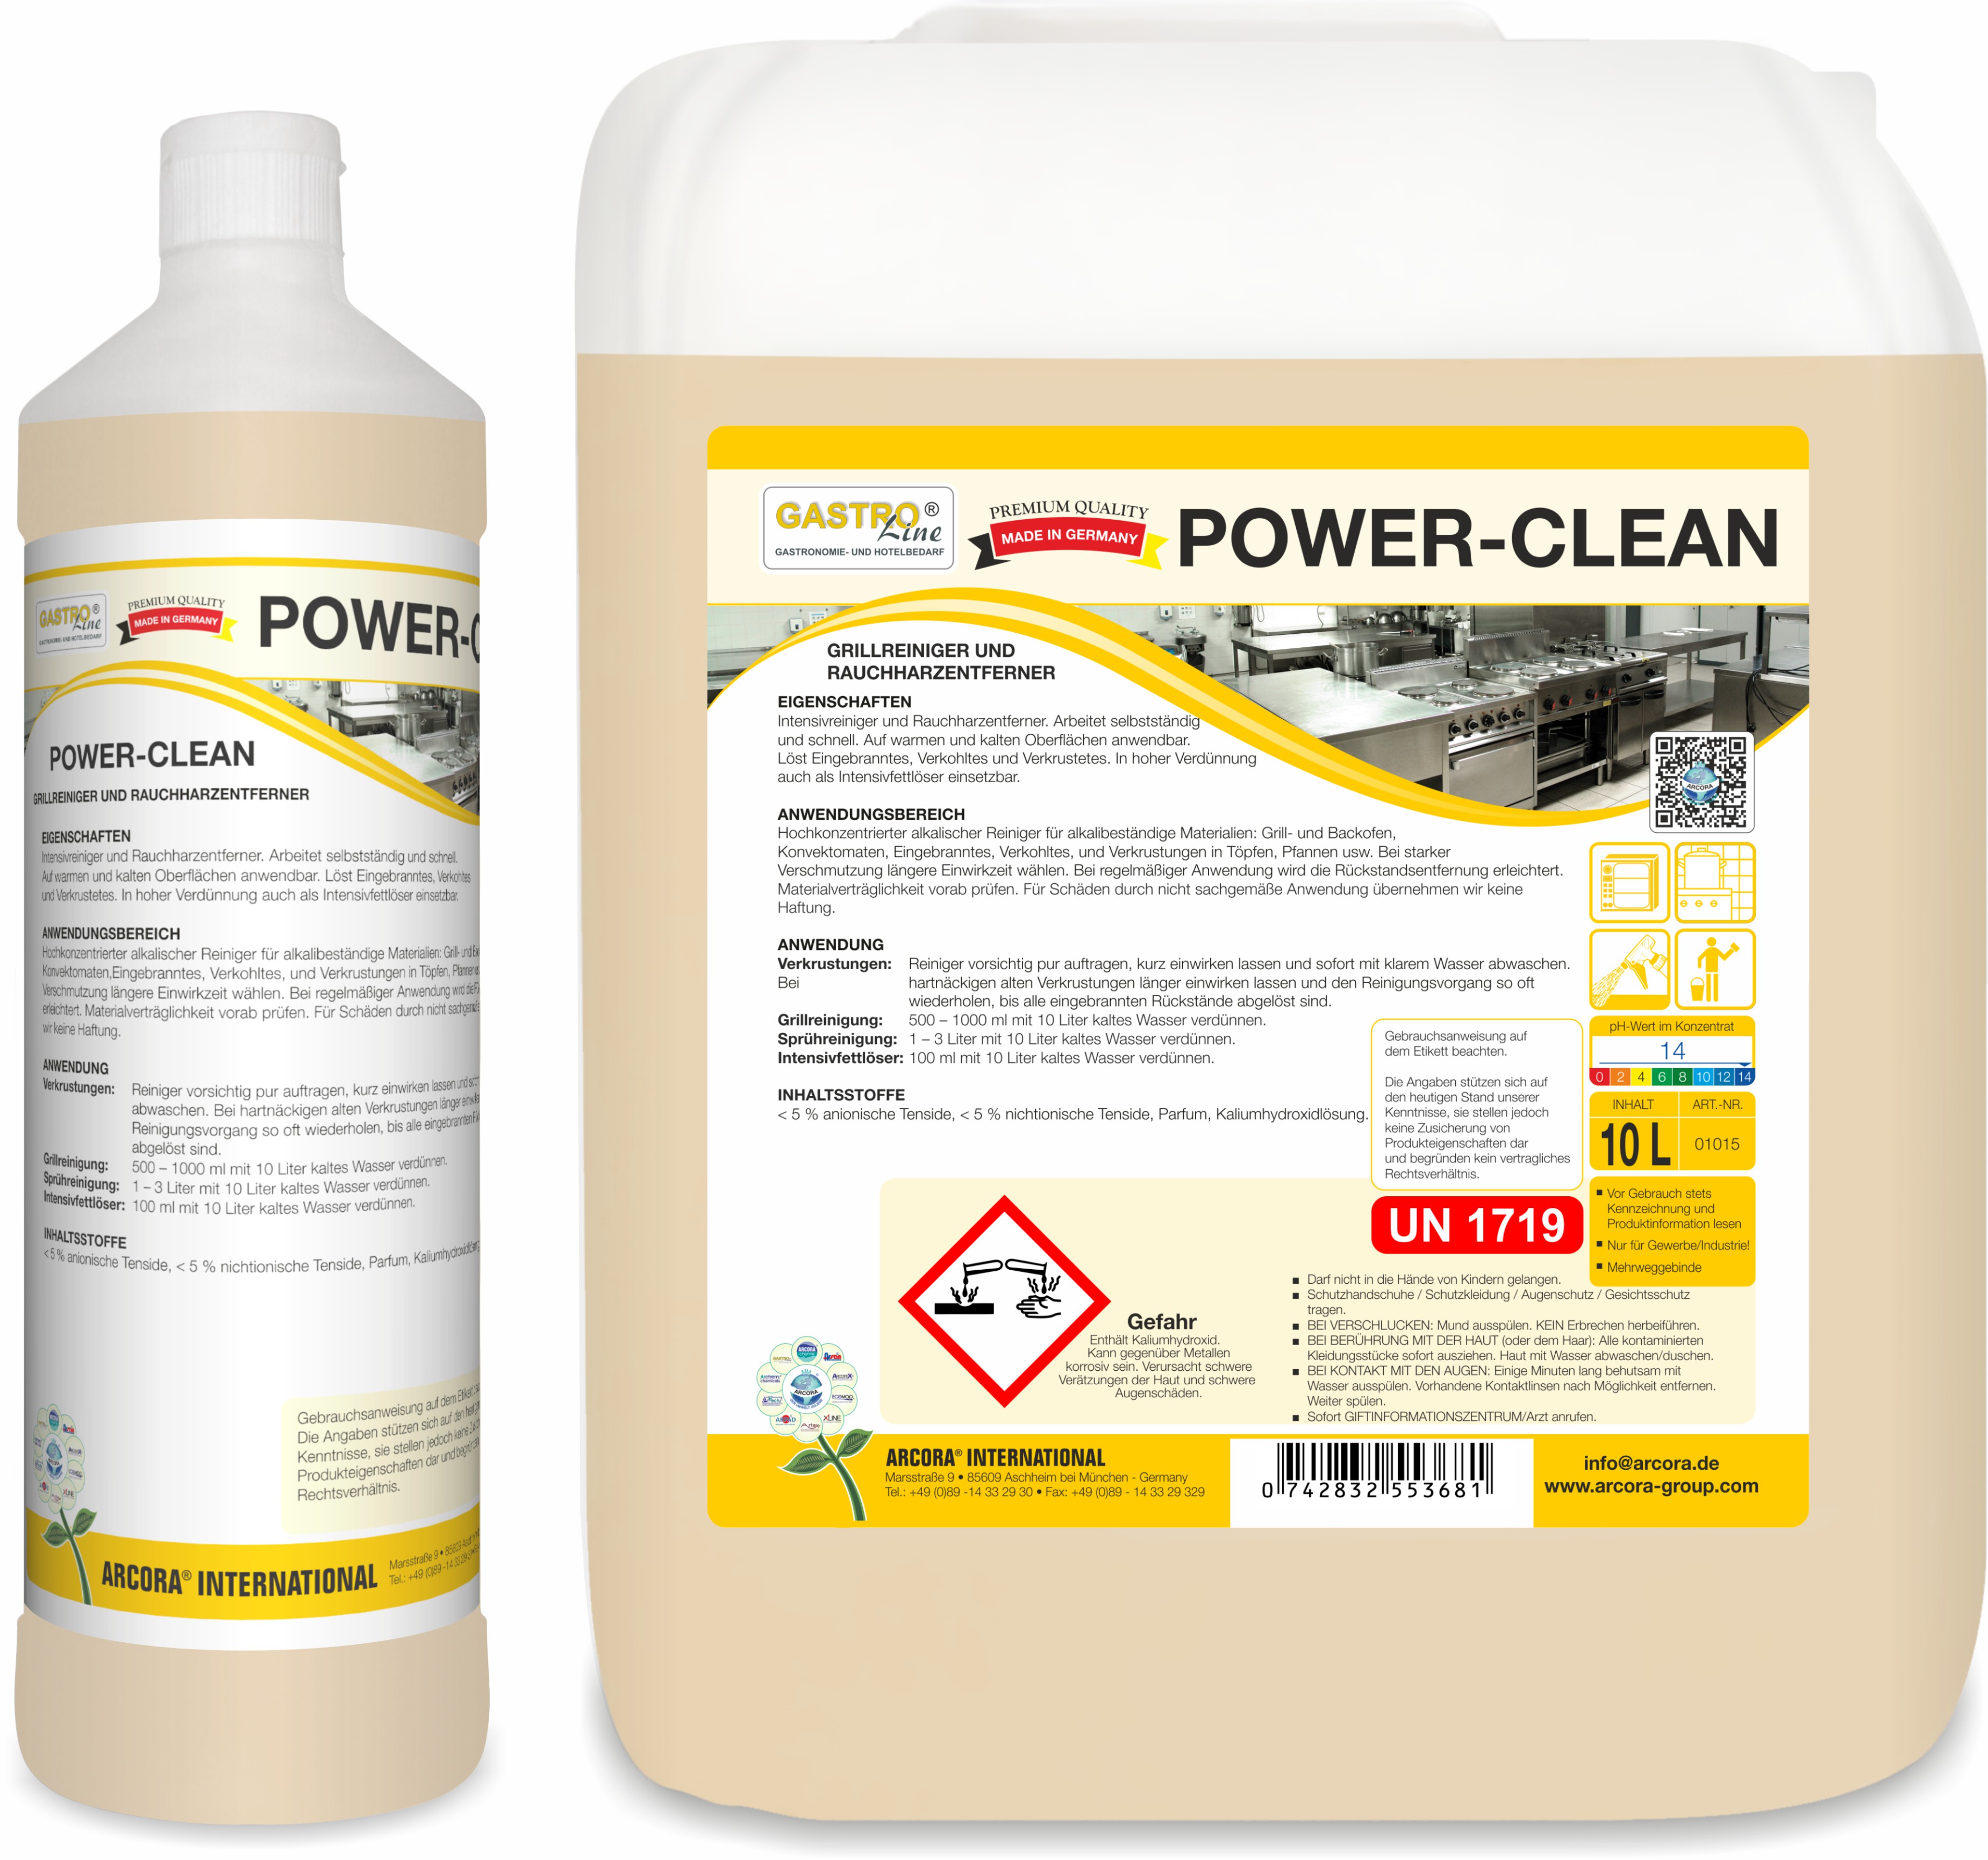 Power-Clean | Grillreiniger & Rauchharzentferner | 10 Liter Kanister